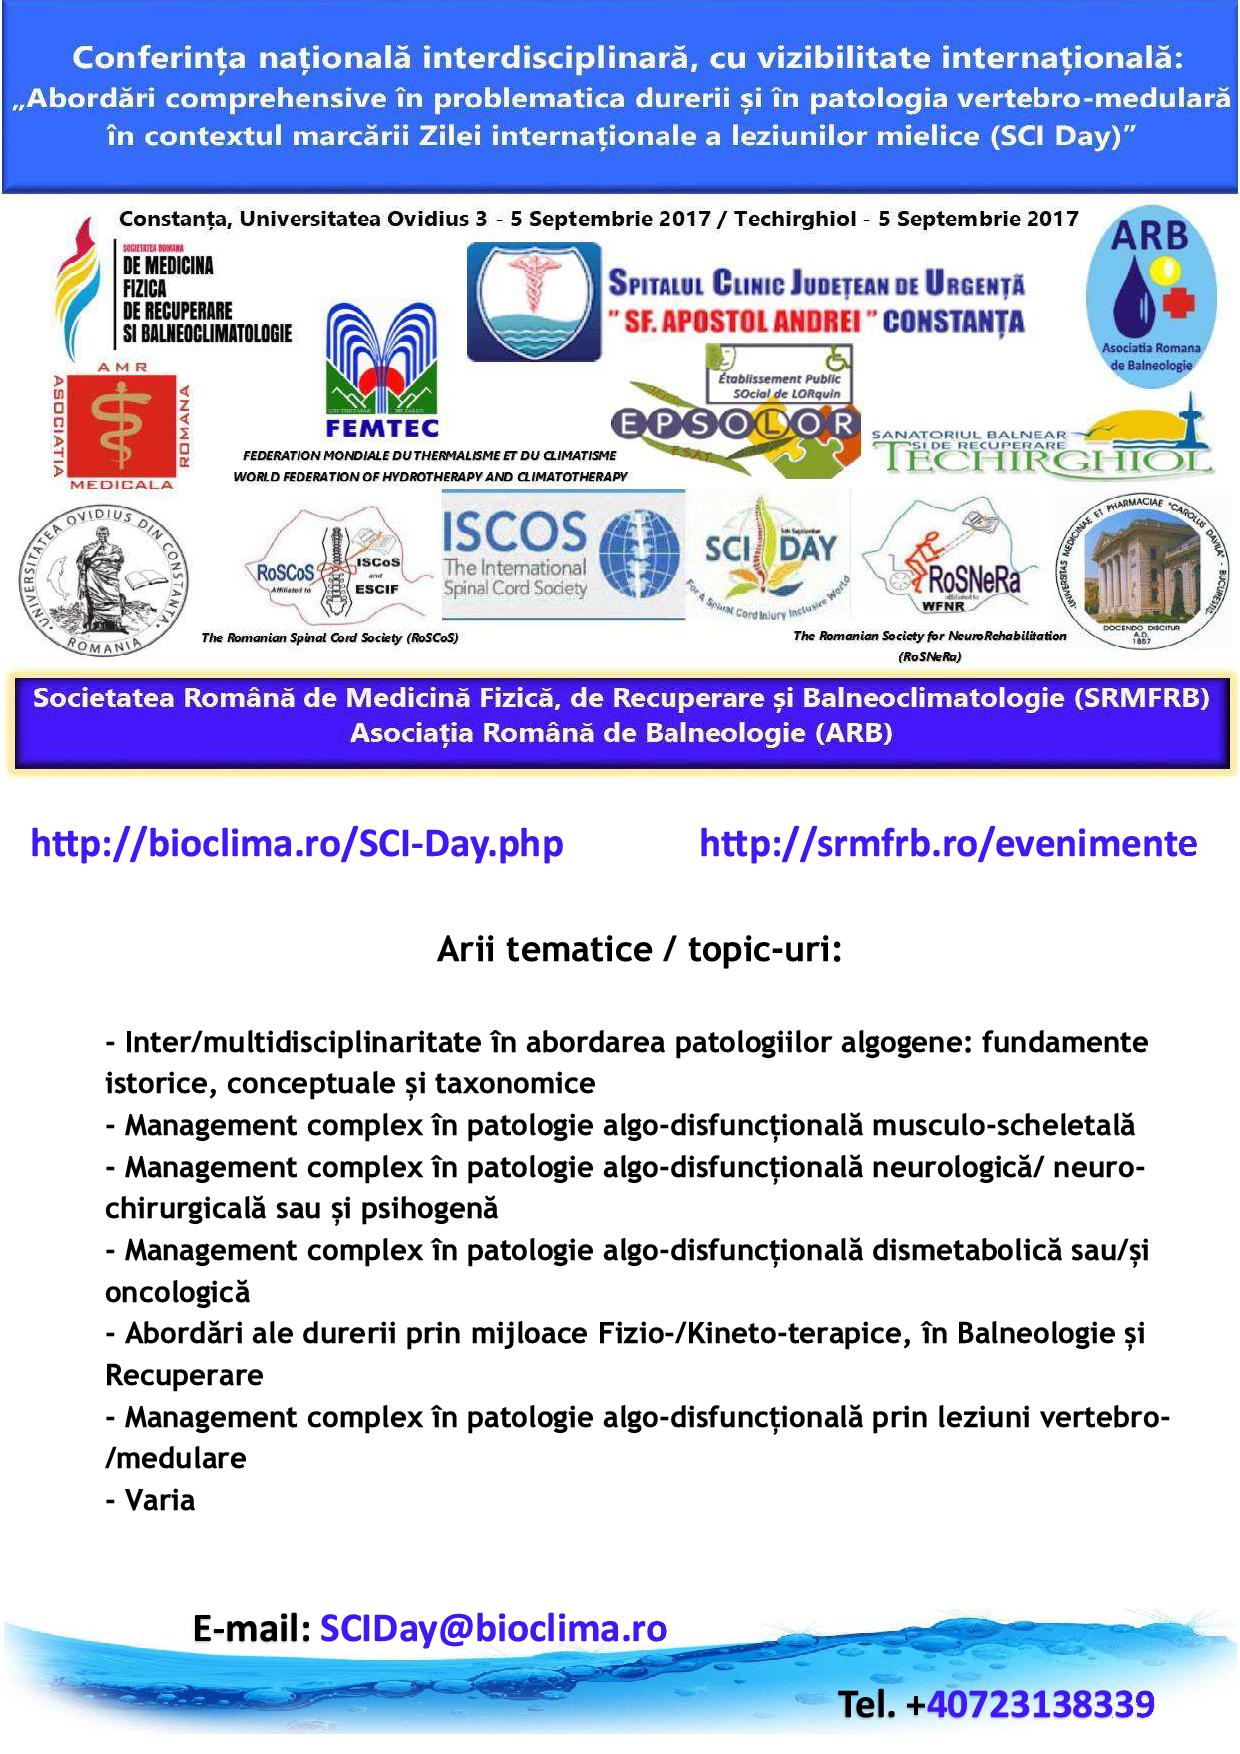 Conferința Națională Interdisciplinară cu vizibilitate internațională: 'Abordări comprehensive în problematica durerii și în patologia vertebro-medulară în contextul marcării Zilei internaționale a leziunilor mielice (SCI Day)'